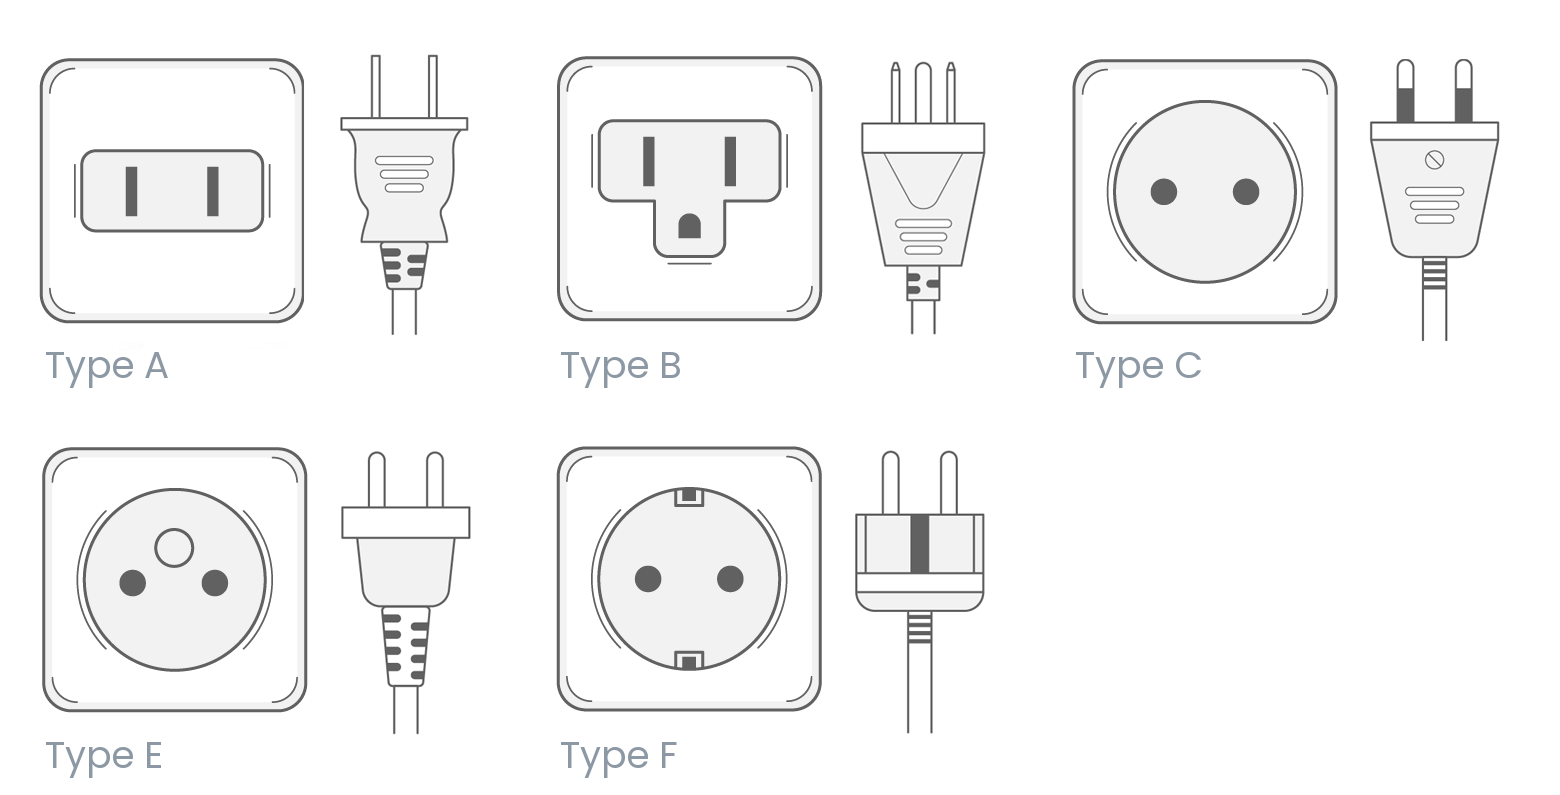 Laos power plug outlet type E